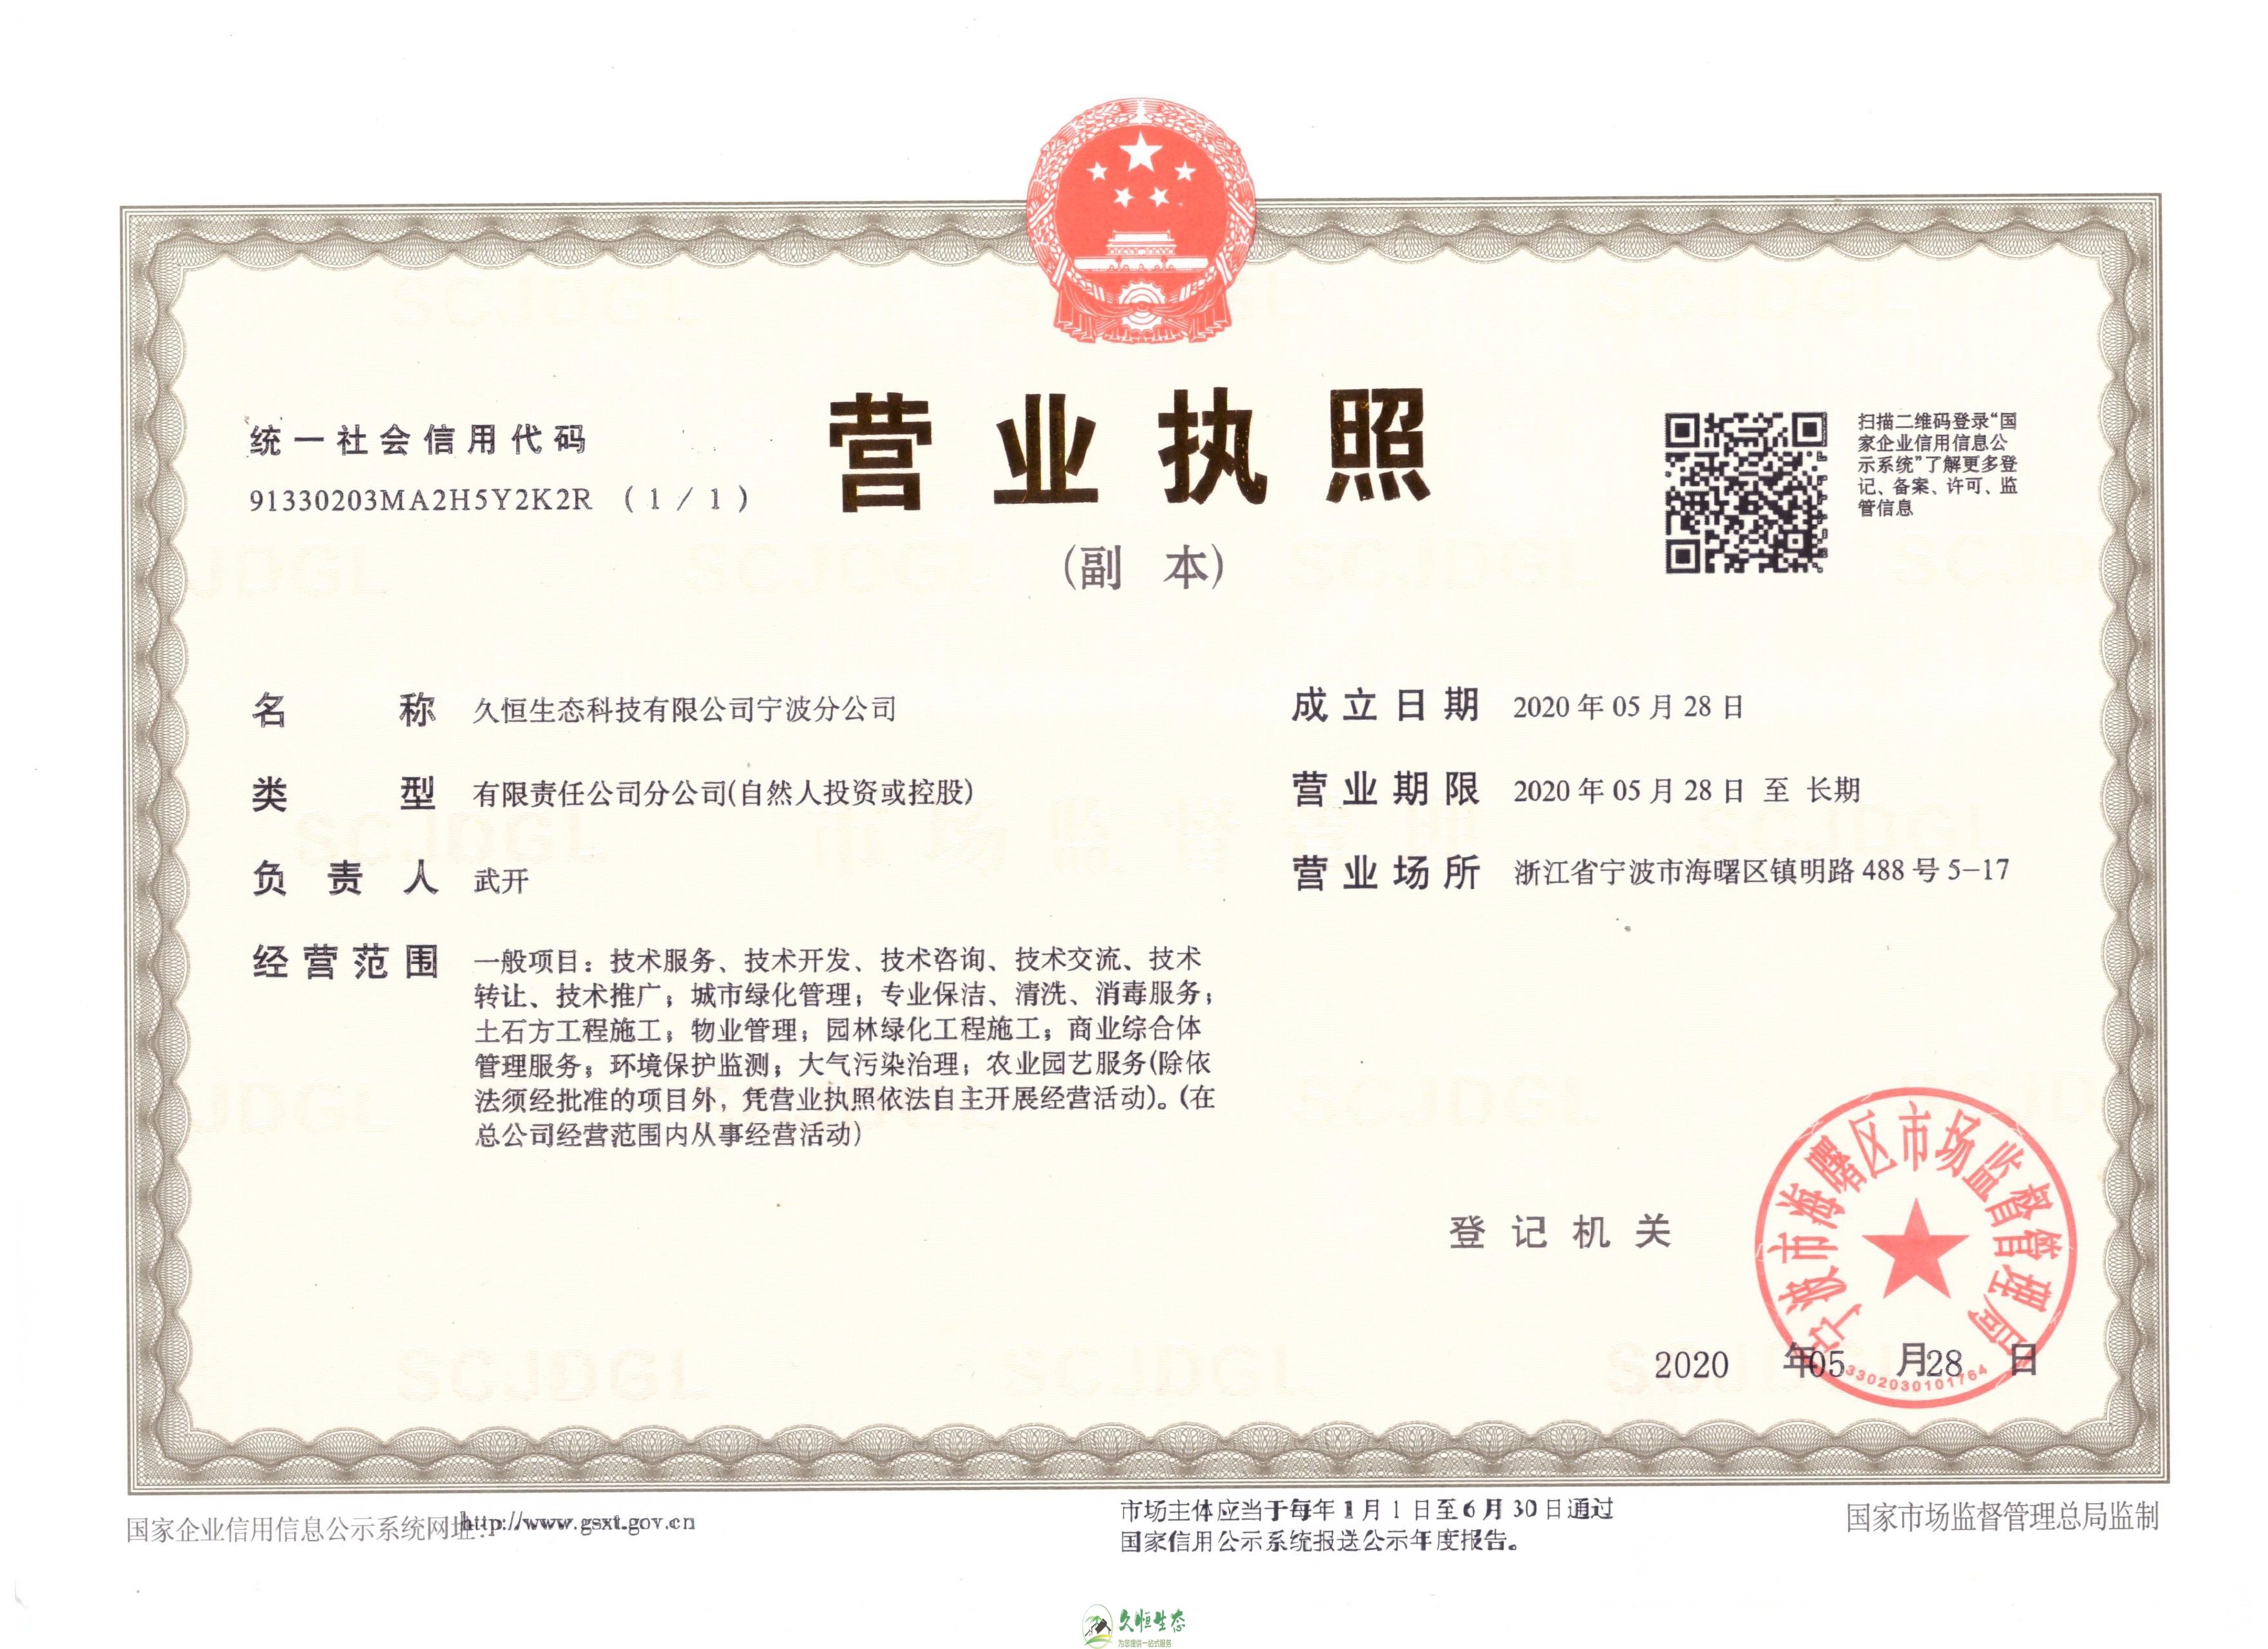 杭州萧山久恒生态宁波分公司2020年5月28日成立